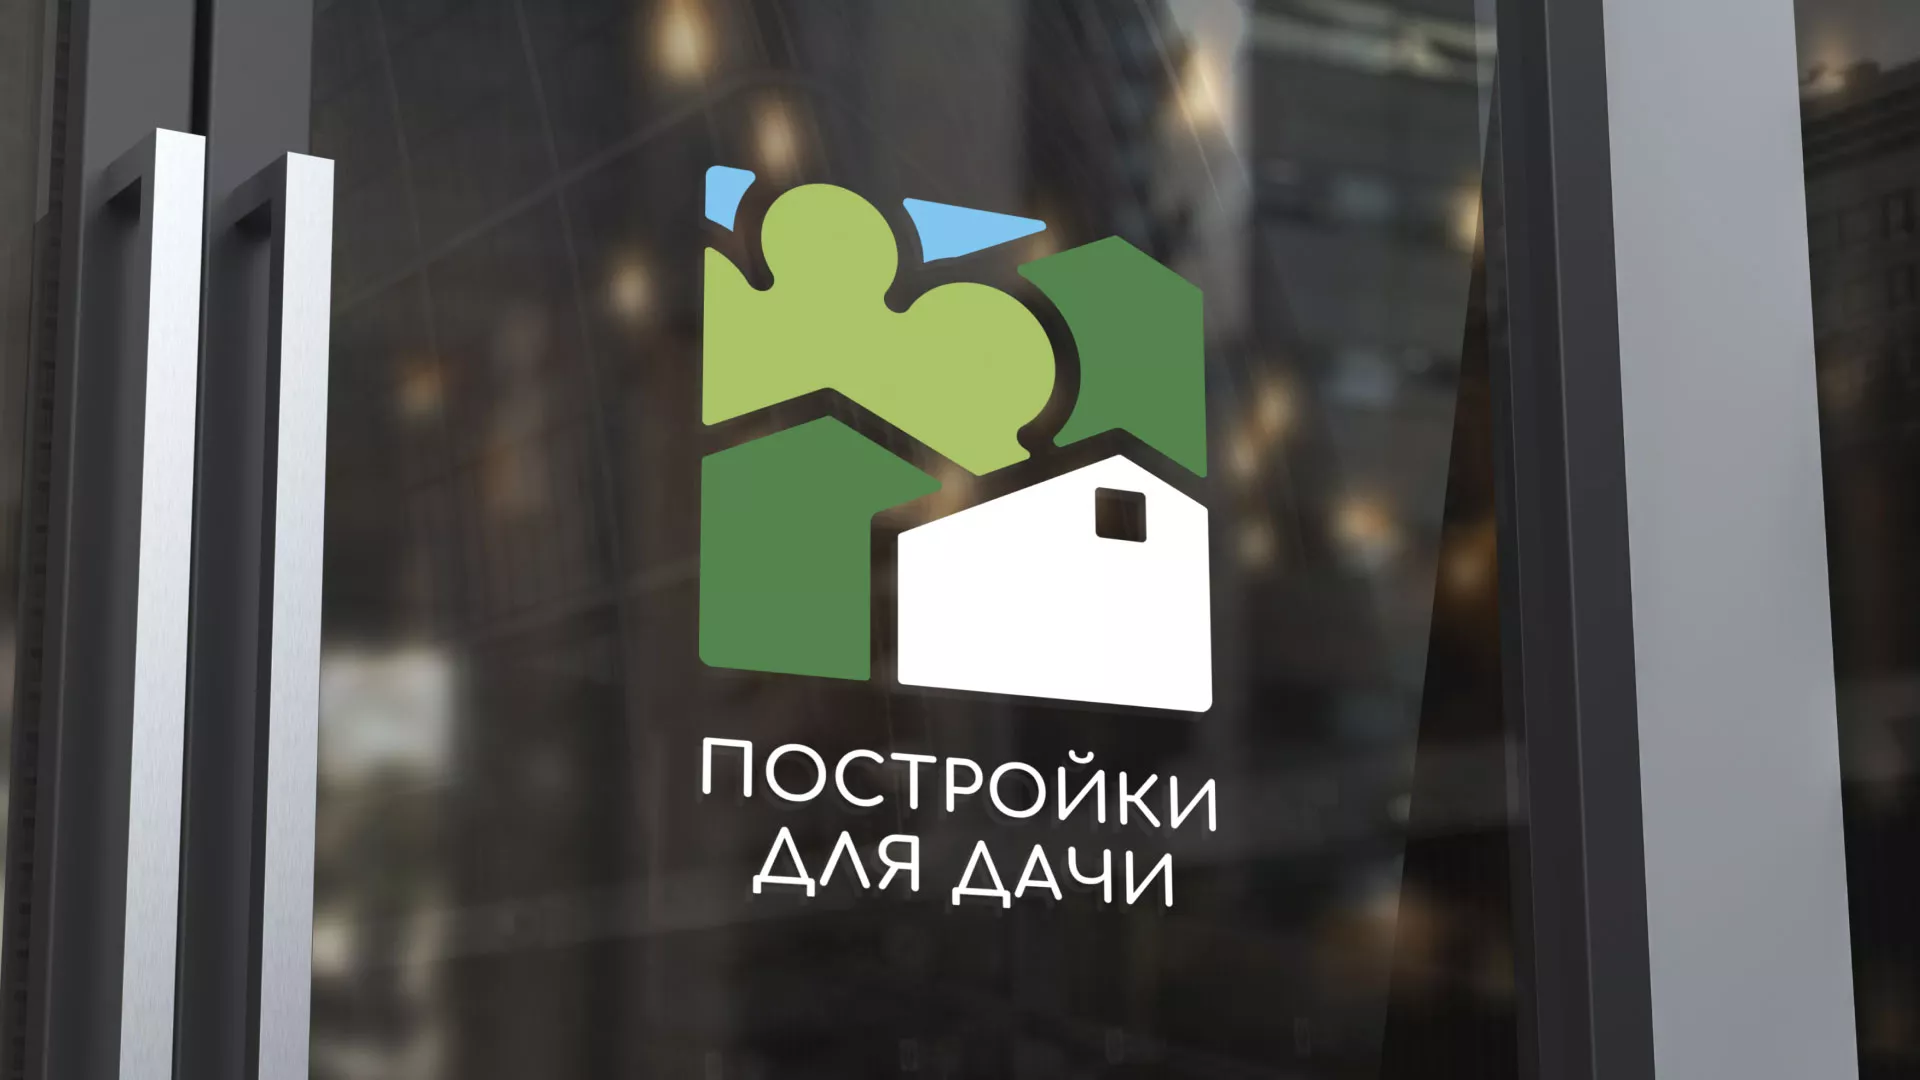 Разработка логотипа в Алексине для компании «Постройки для дачи»